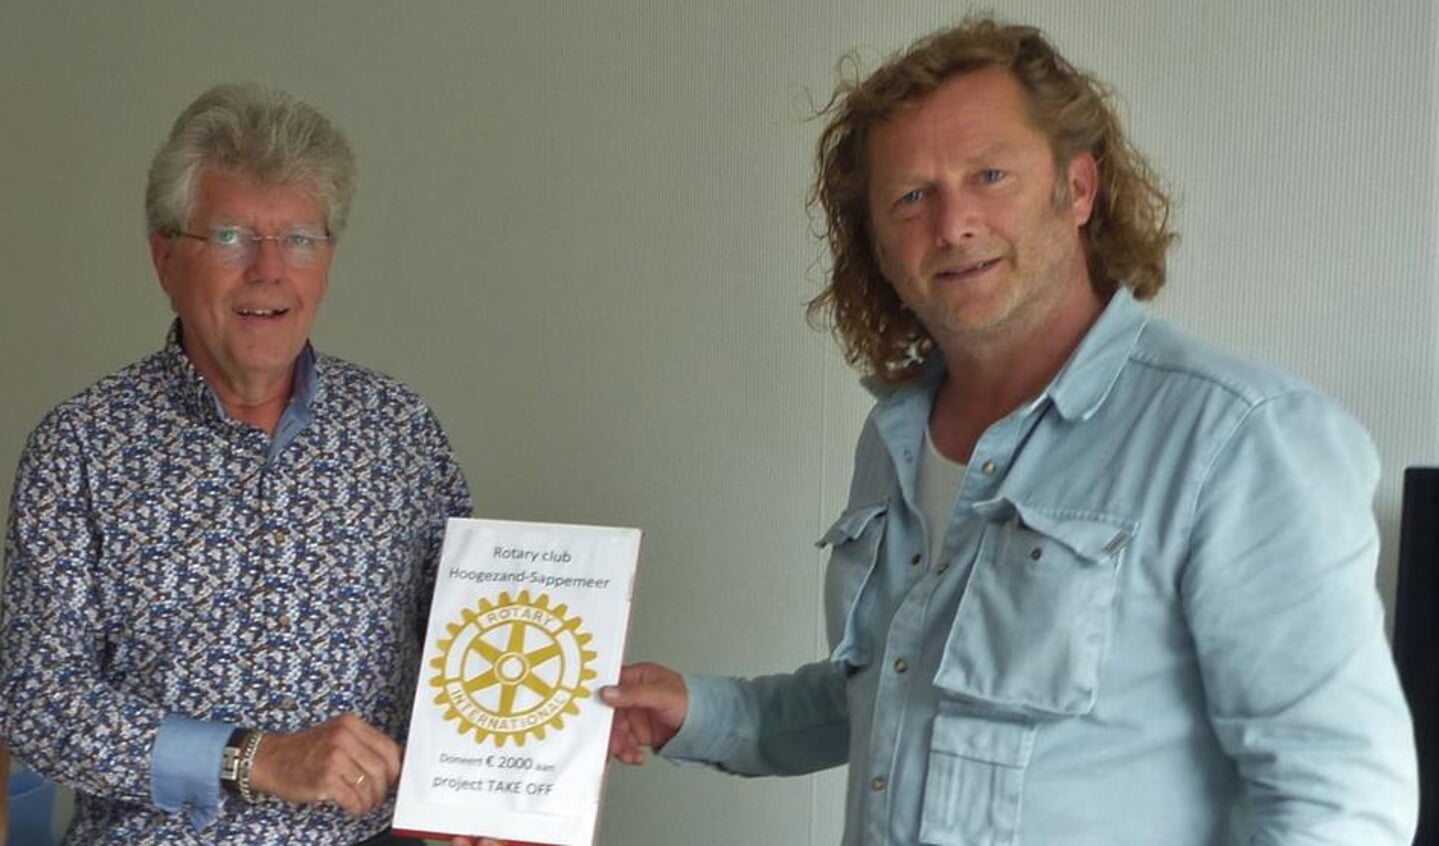 De symbolische overhandiging van de Rotary-donatie door Wybe Nauta, voorzitter van Rotary H-S, aan Alexander van der Woude, manager primair proces bij Wender.